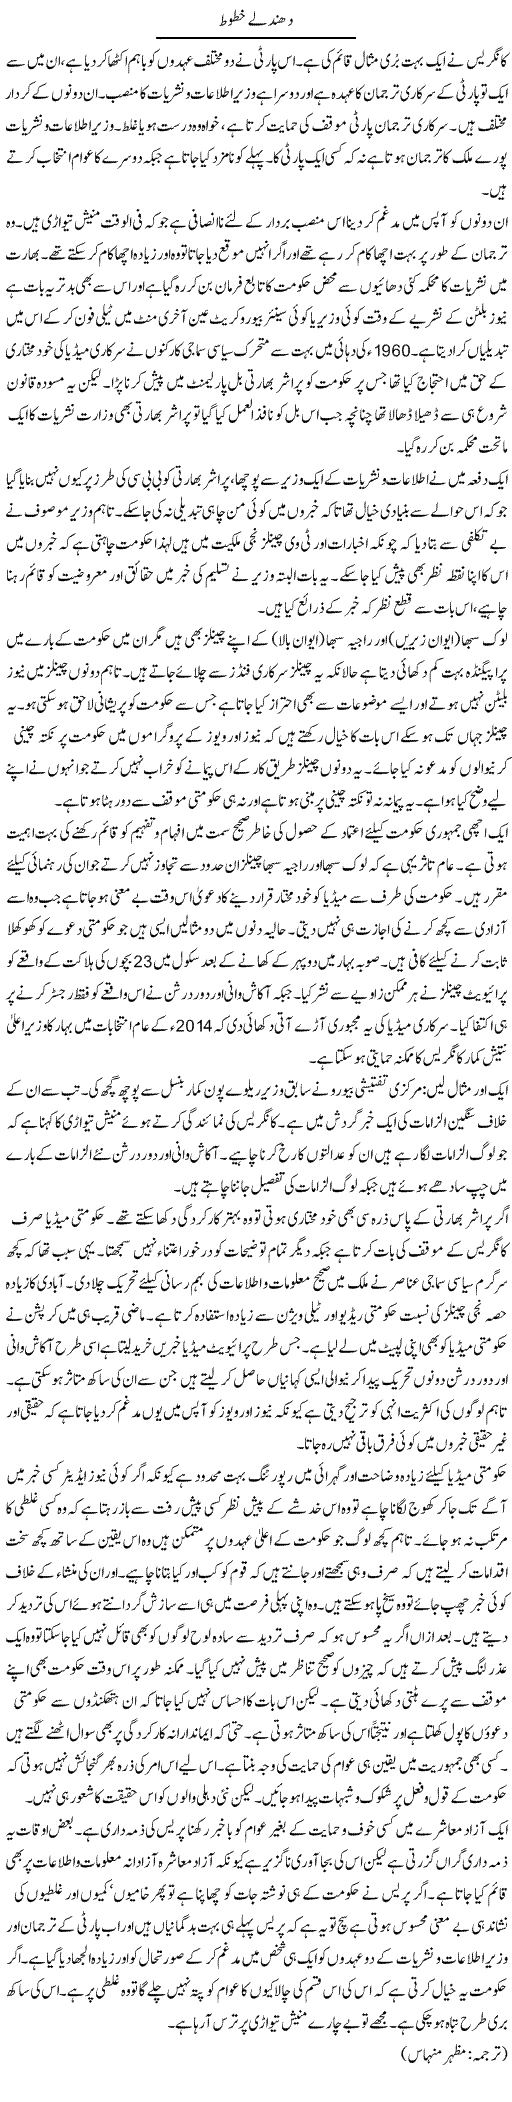 Dhundly Khatoot | Kuldip Nayar | Daily Urdu Columns